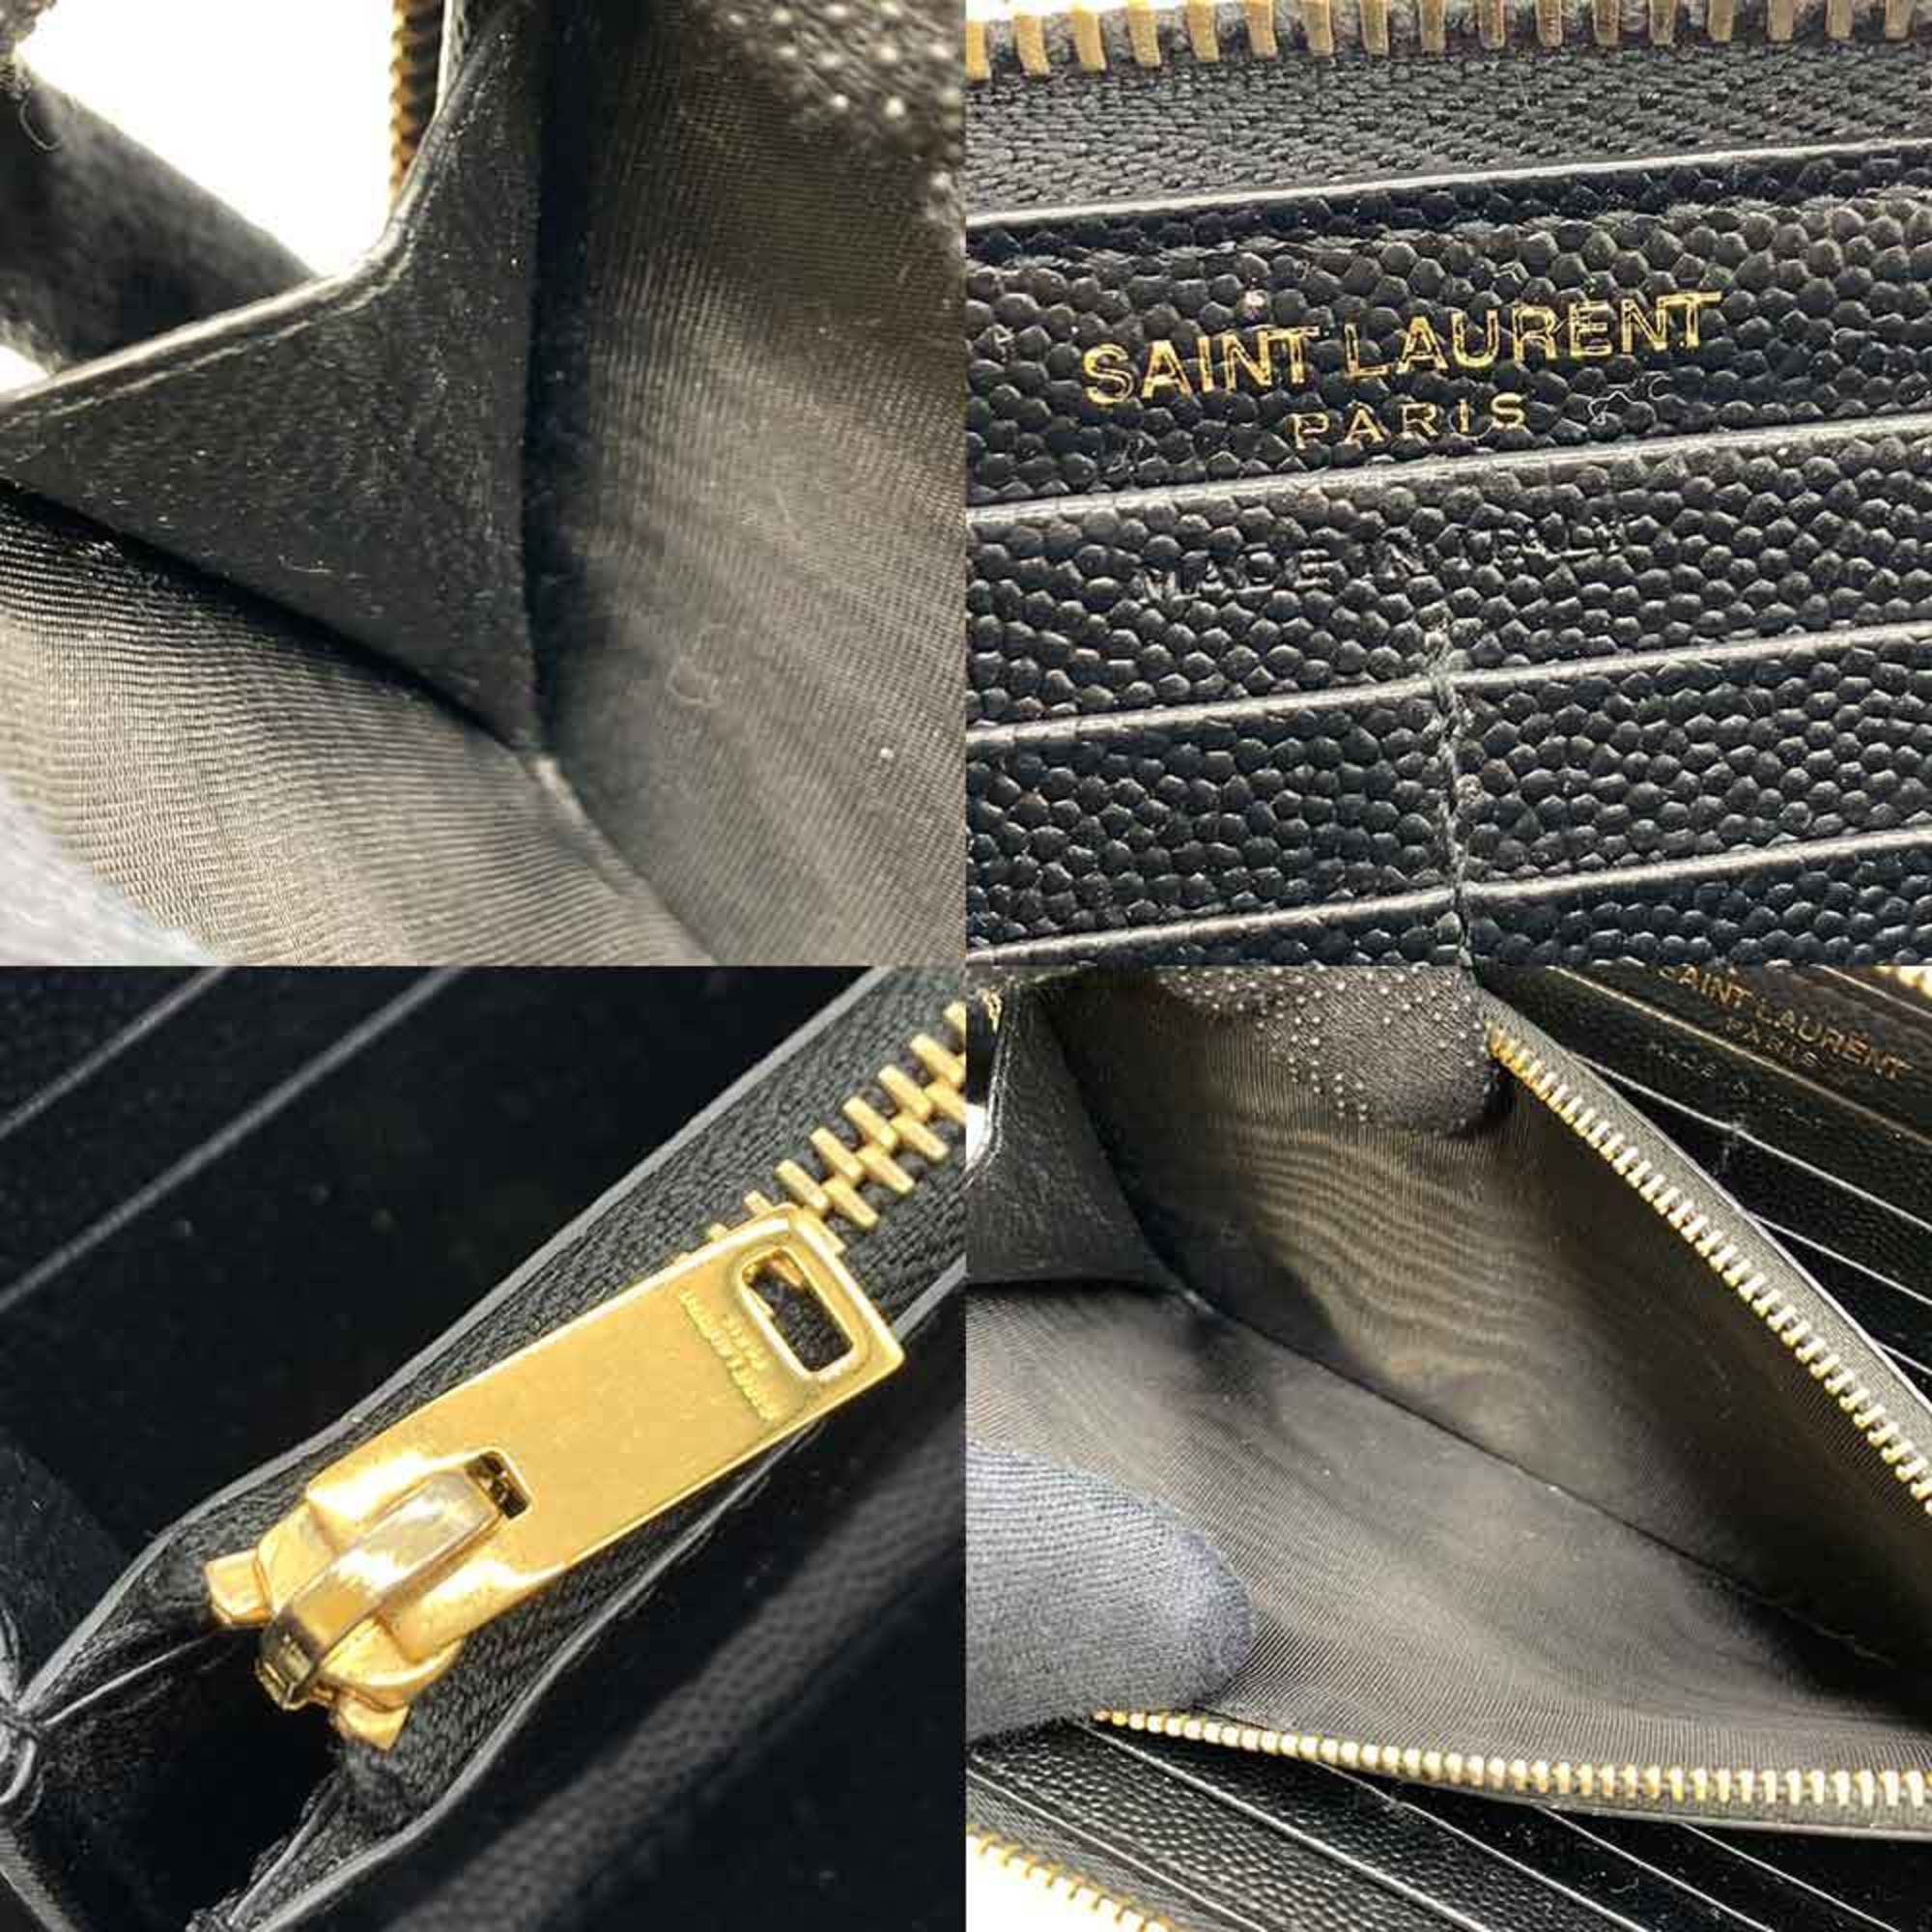 Saint Laurent Monogram Long Wallet Black Round YSL Women's Leather 358094 SAINTLAUREN